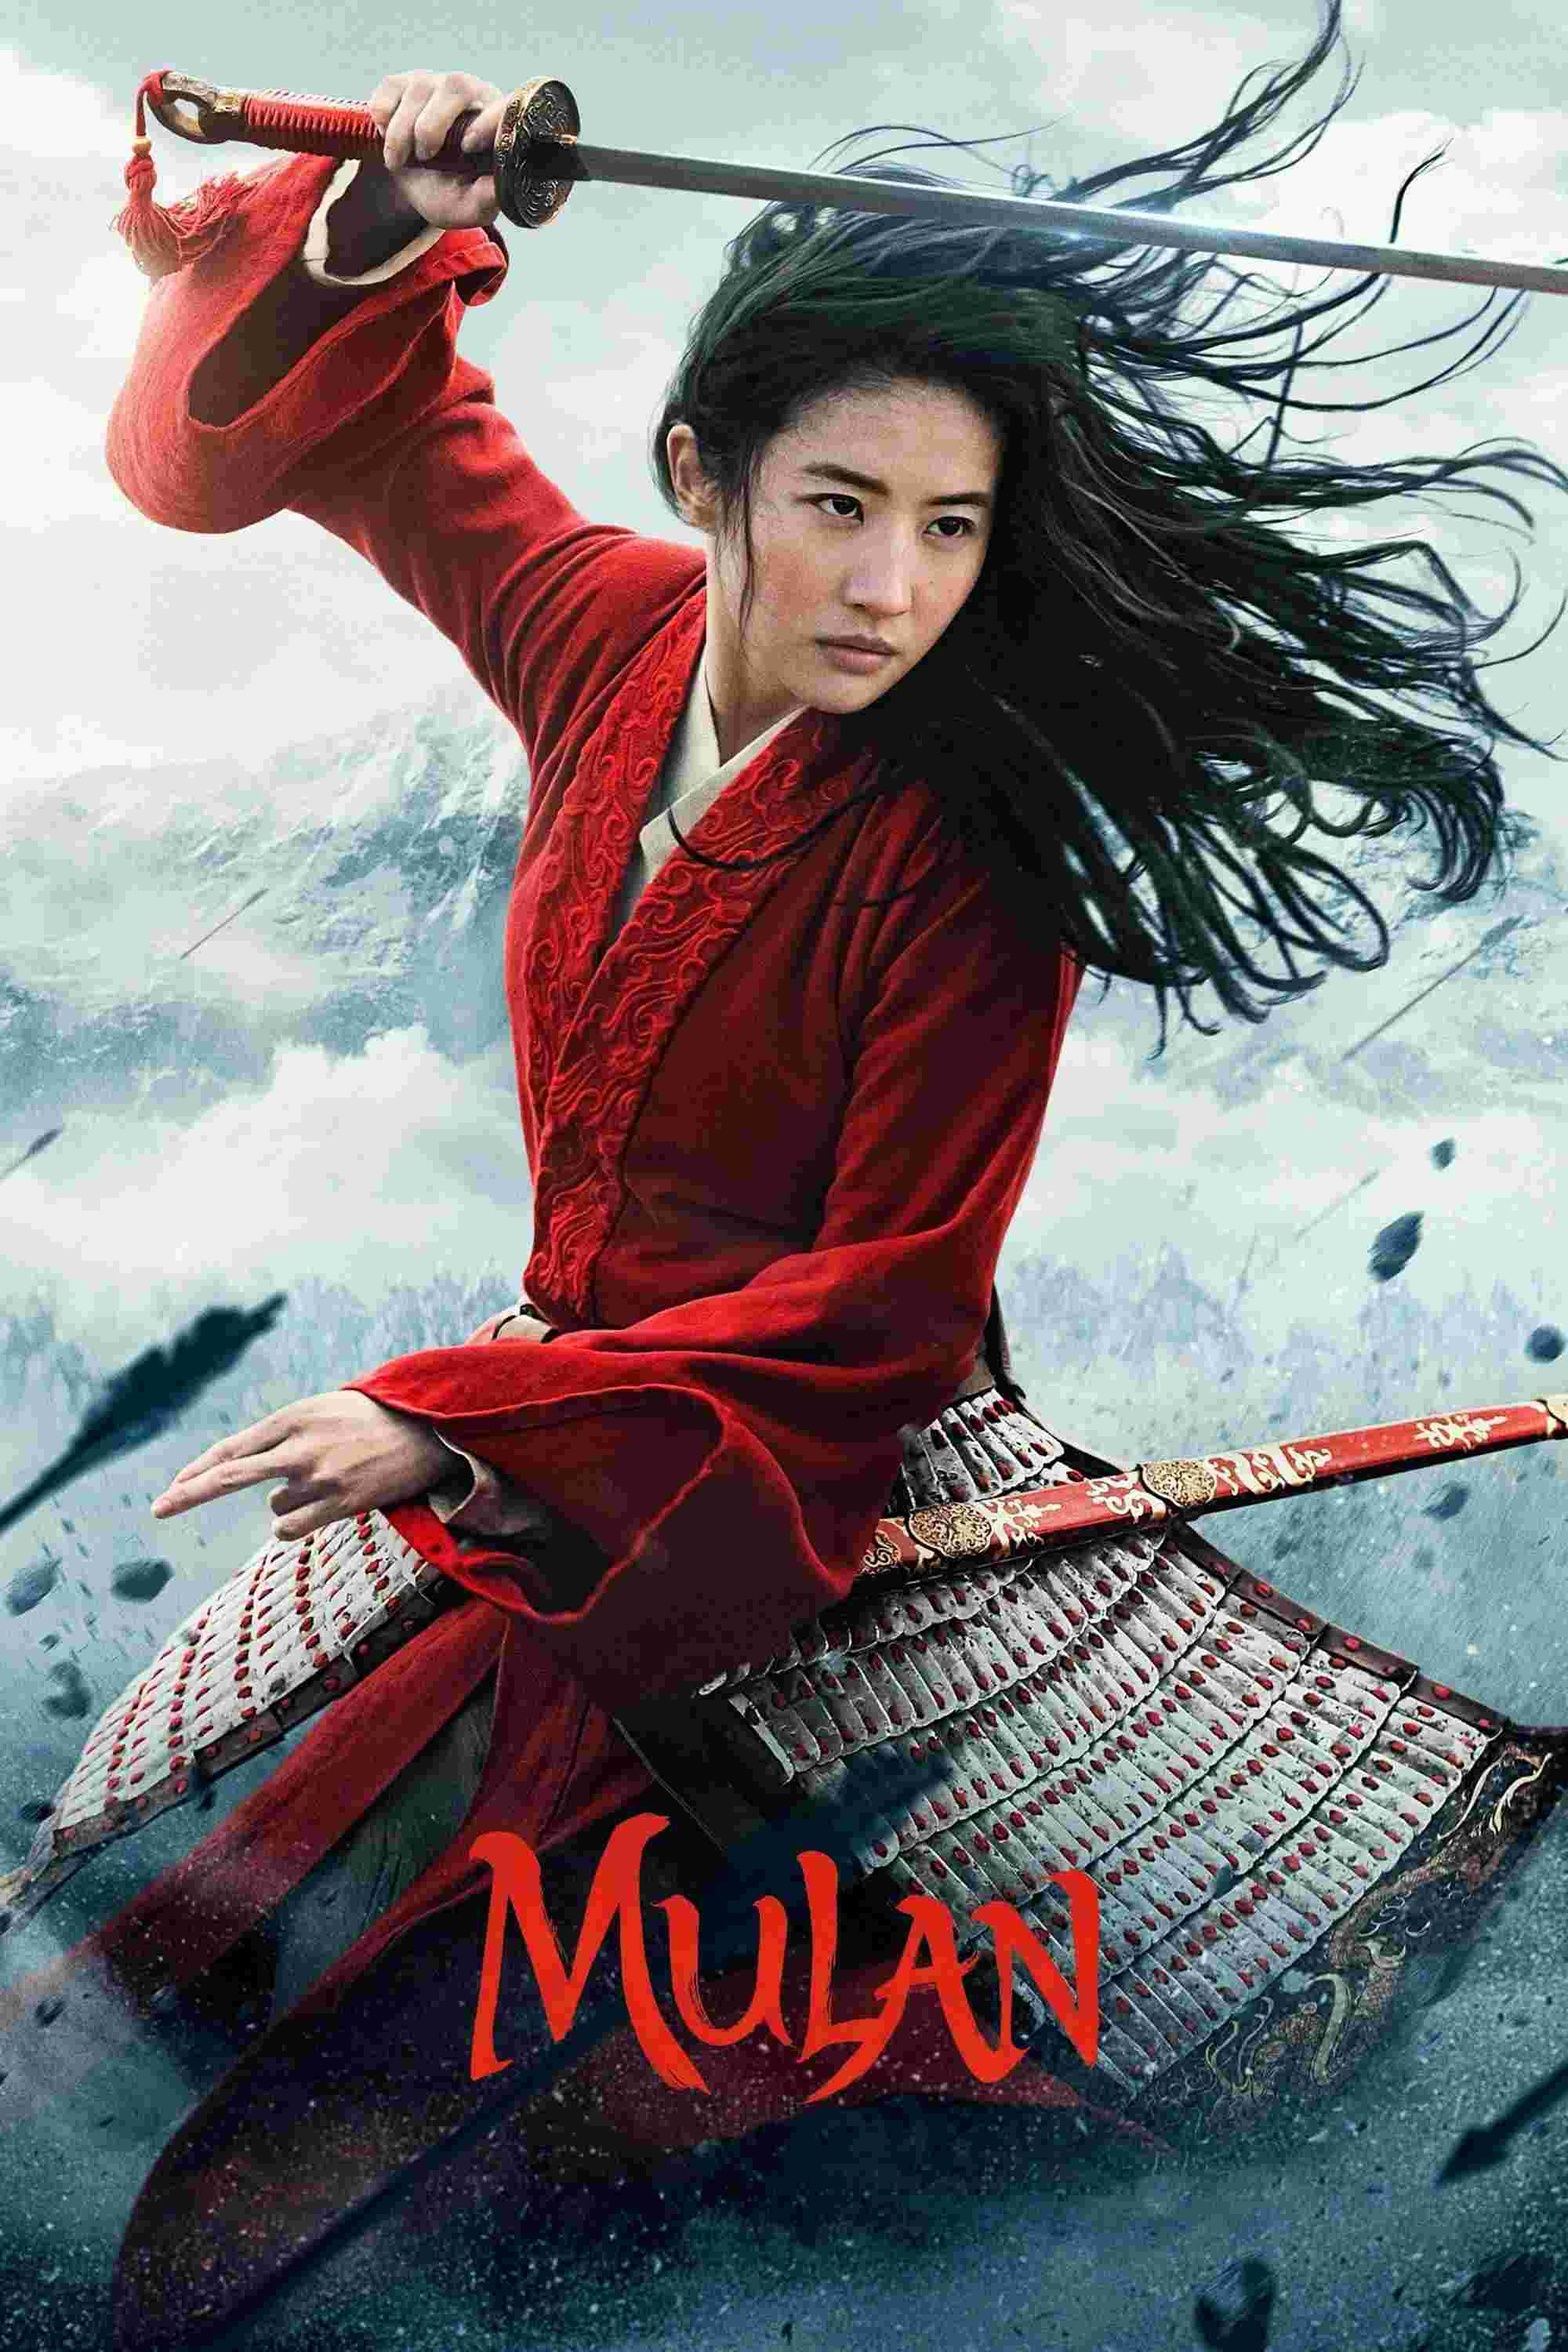 Mulan (2020) Yifei Liu